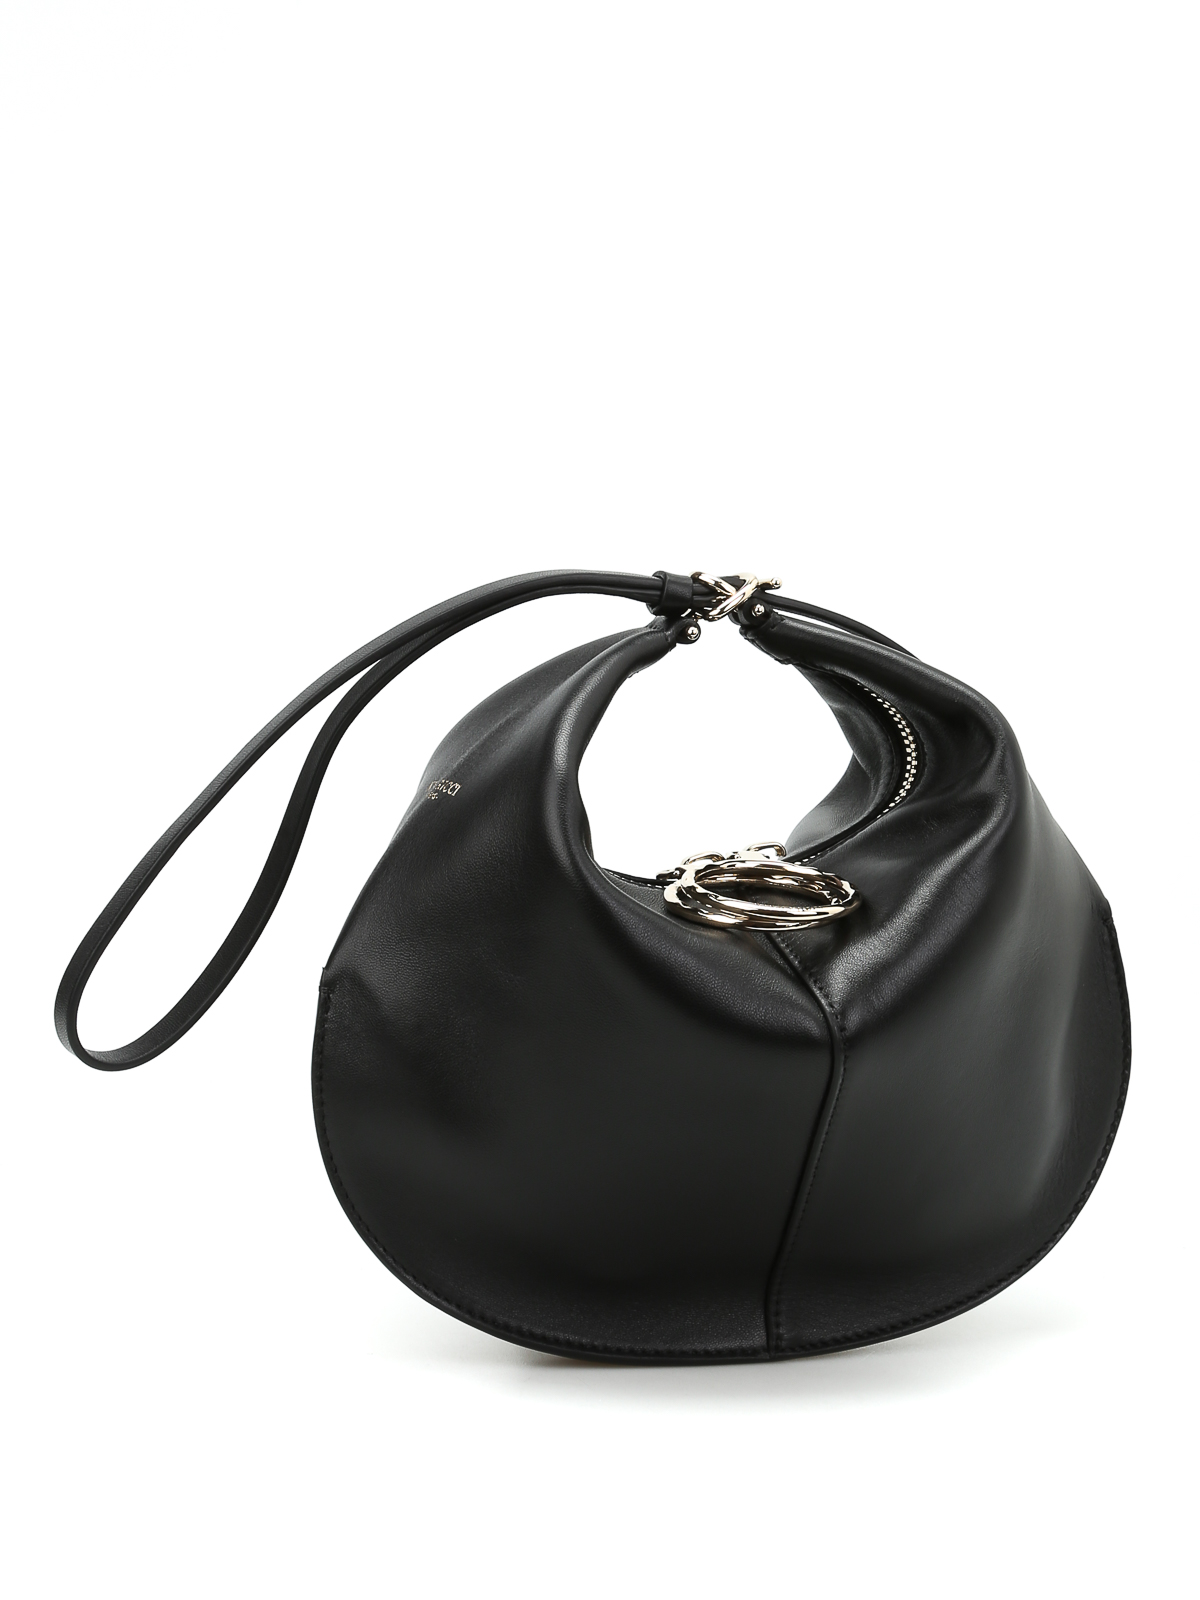 Kuti wrist strap leather small bag by Nina Ricci - clutches | iKRIX